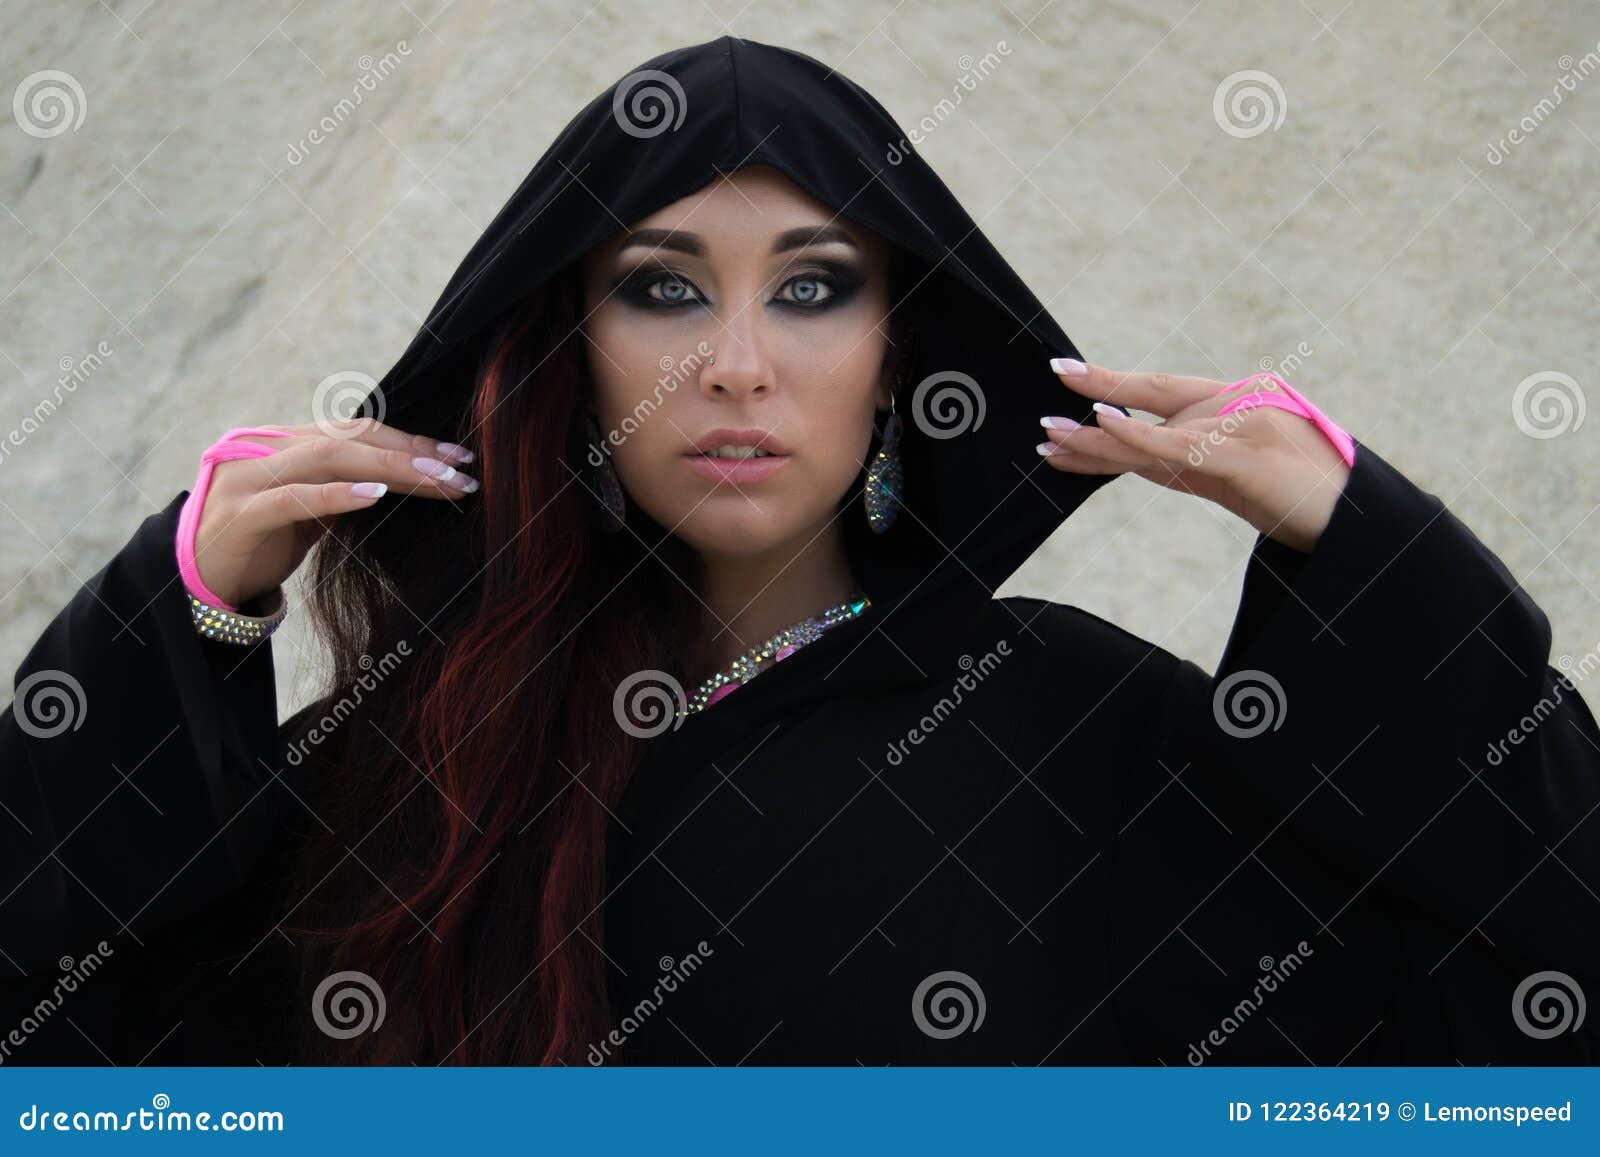 young beautiful caucasian woman posing in abaya in empty quarter desert